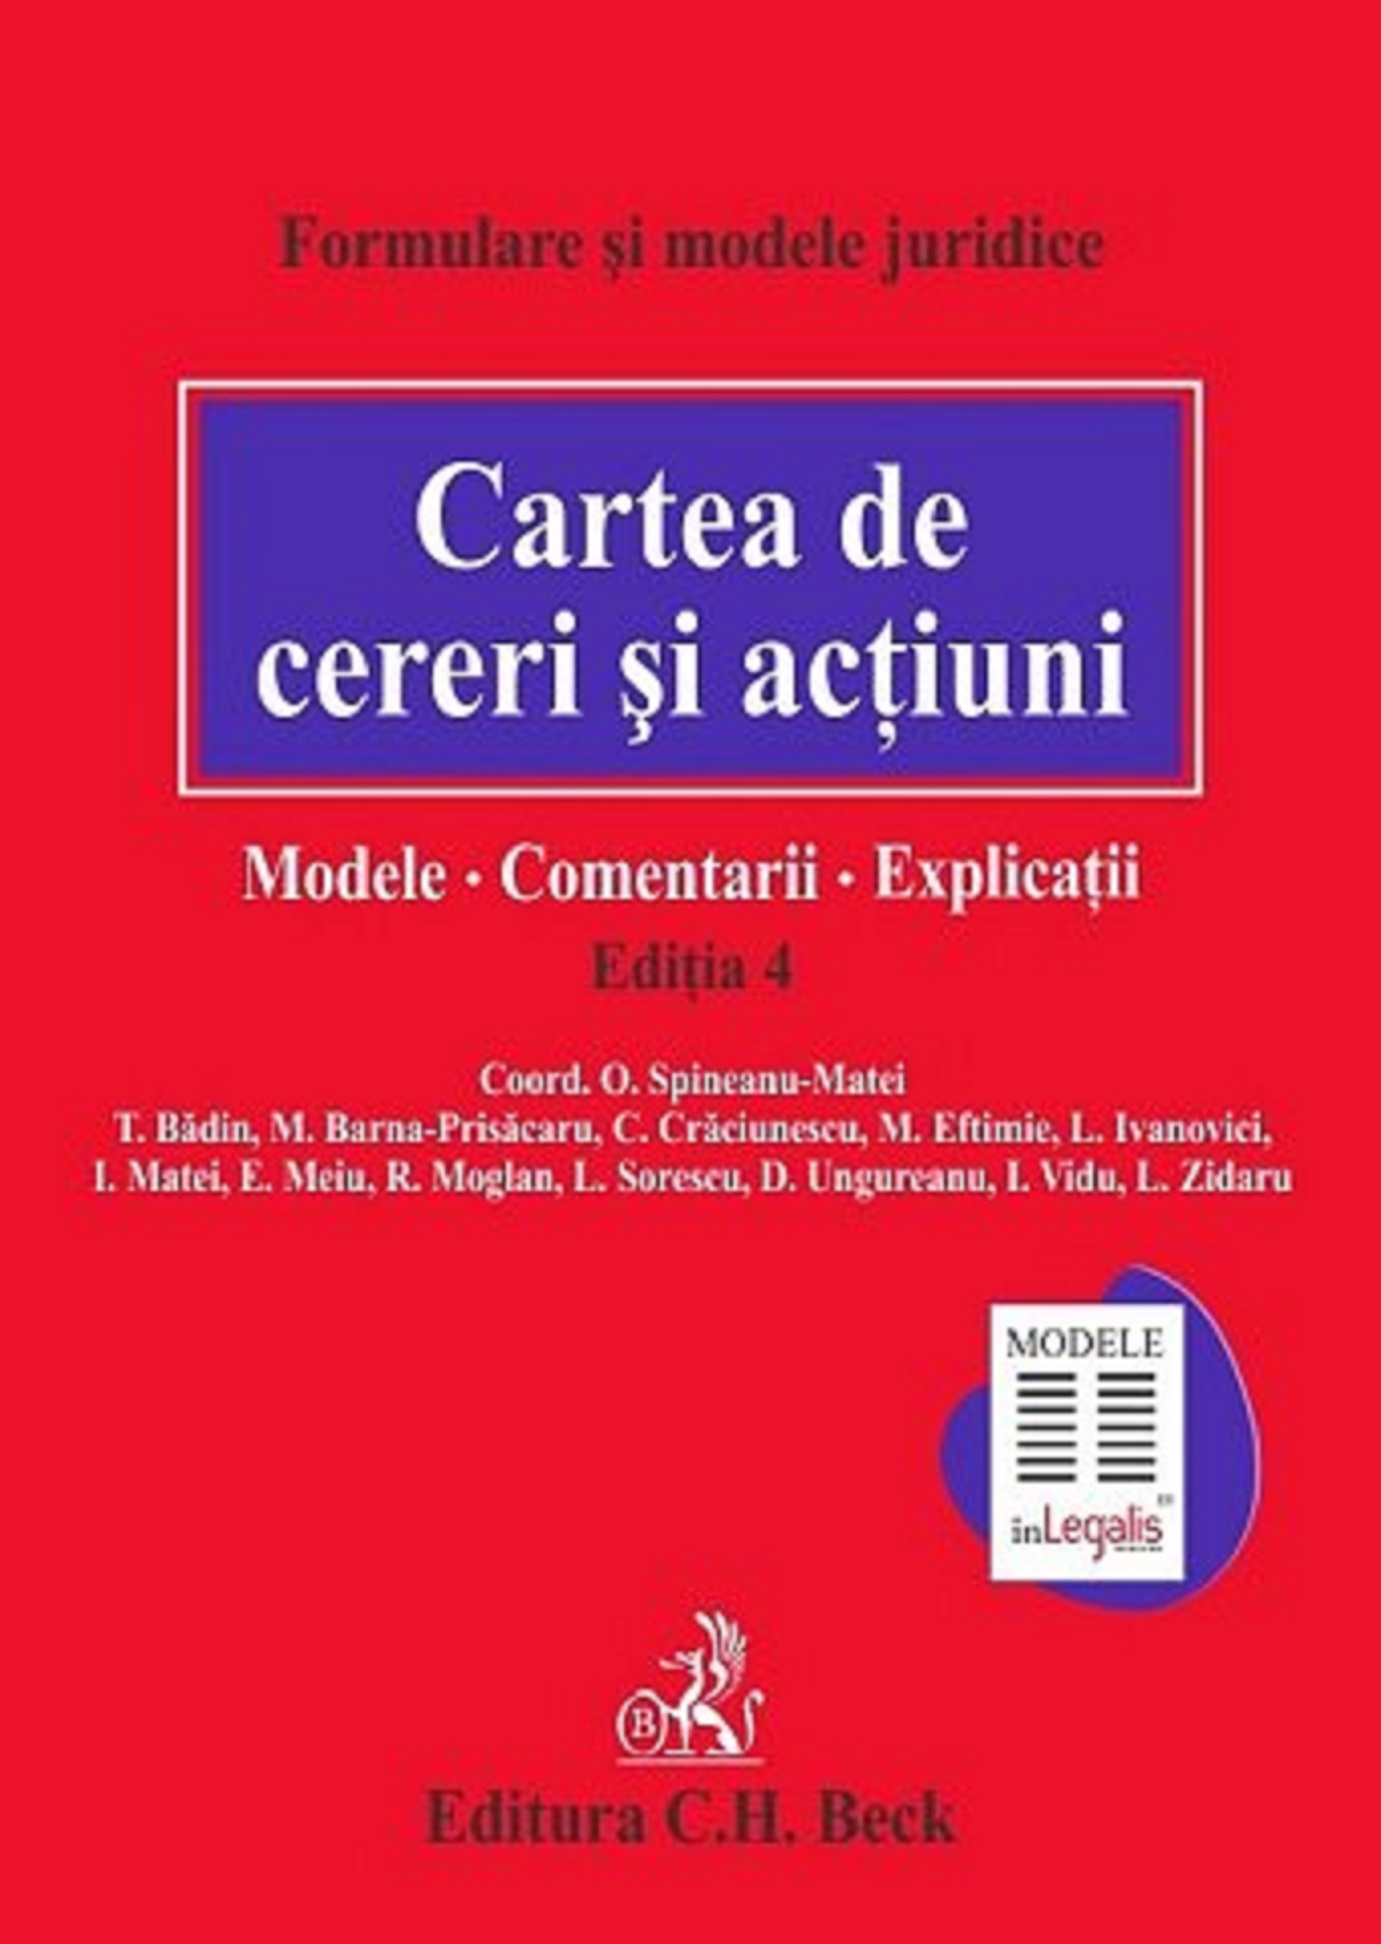 Cartea de cereri si actiuni. Modele | T. Badin, M. Barna-Prisacaru, M. Eftimie Actiuni